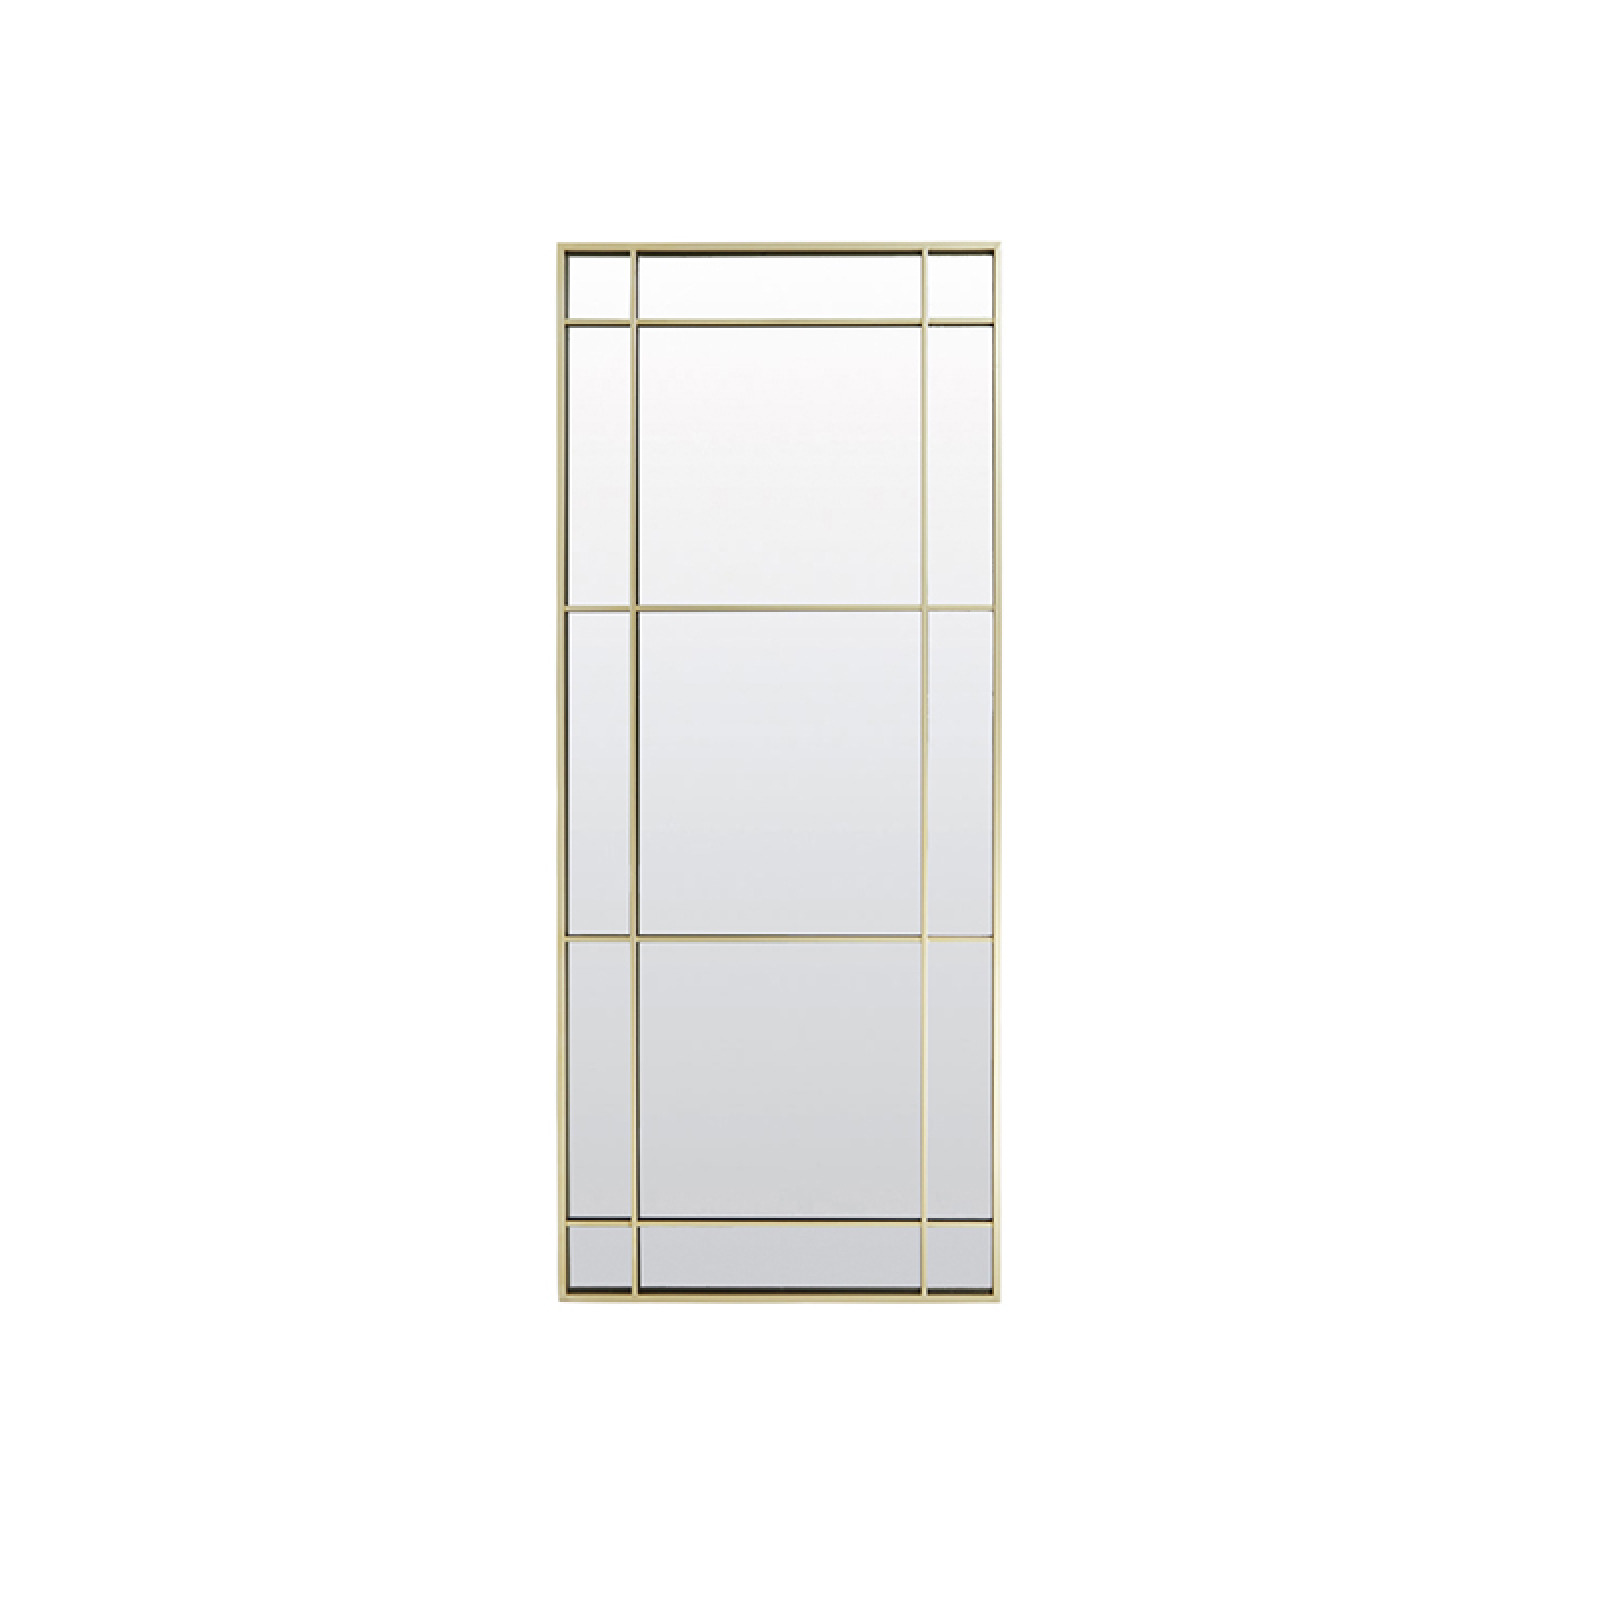 Rincon smoked glass-gold mirror 